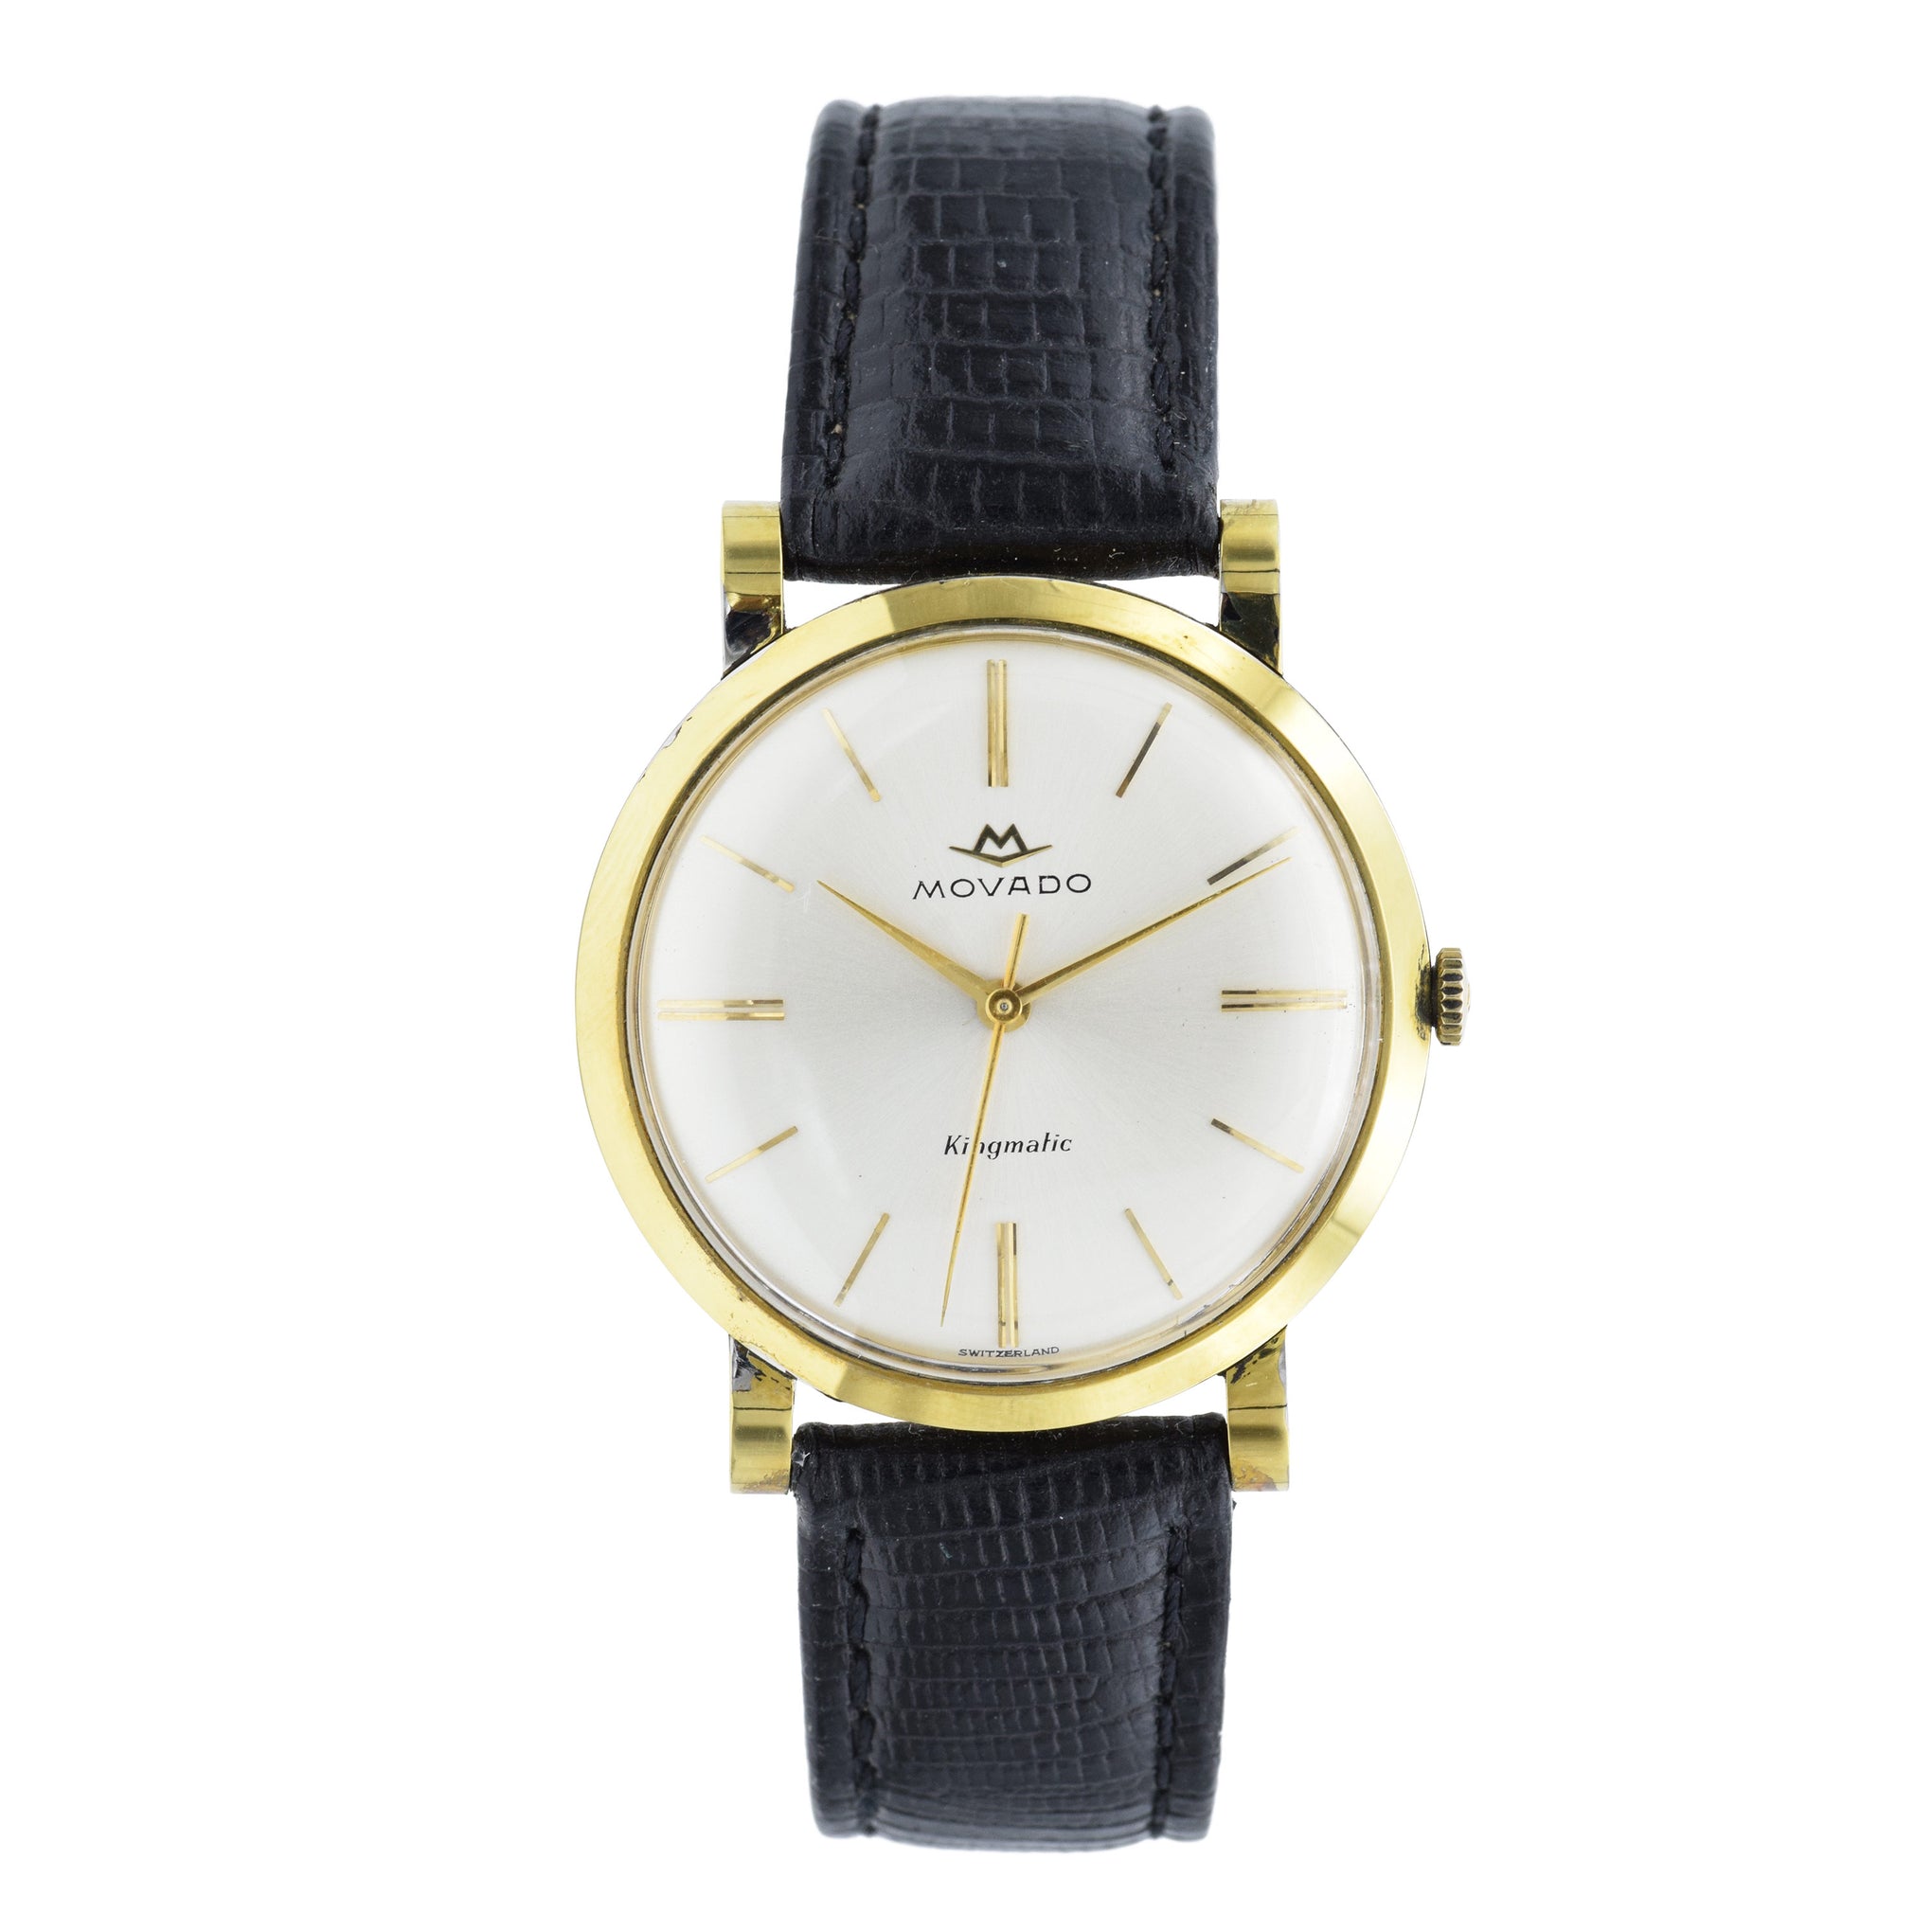 Vintage 1960s Movado Watch